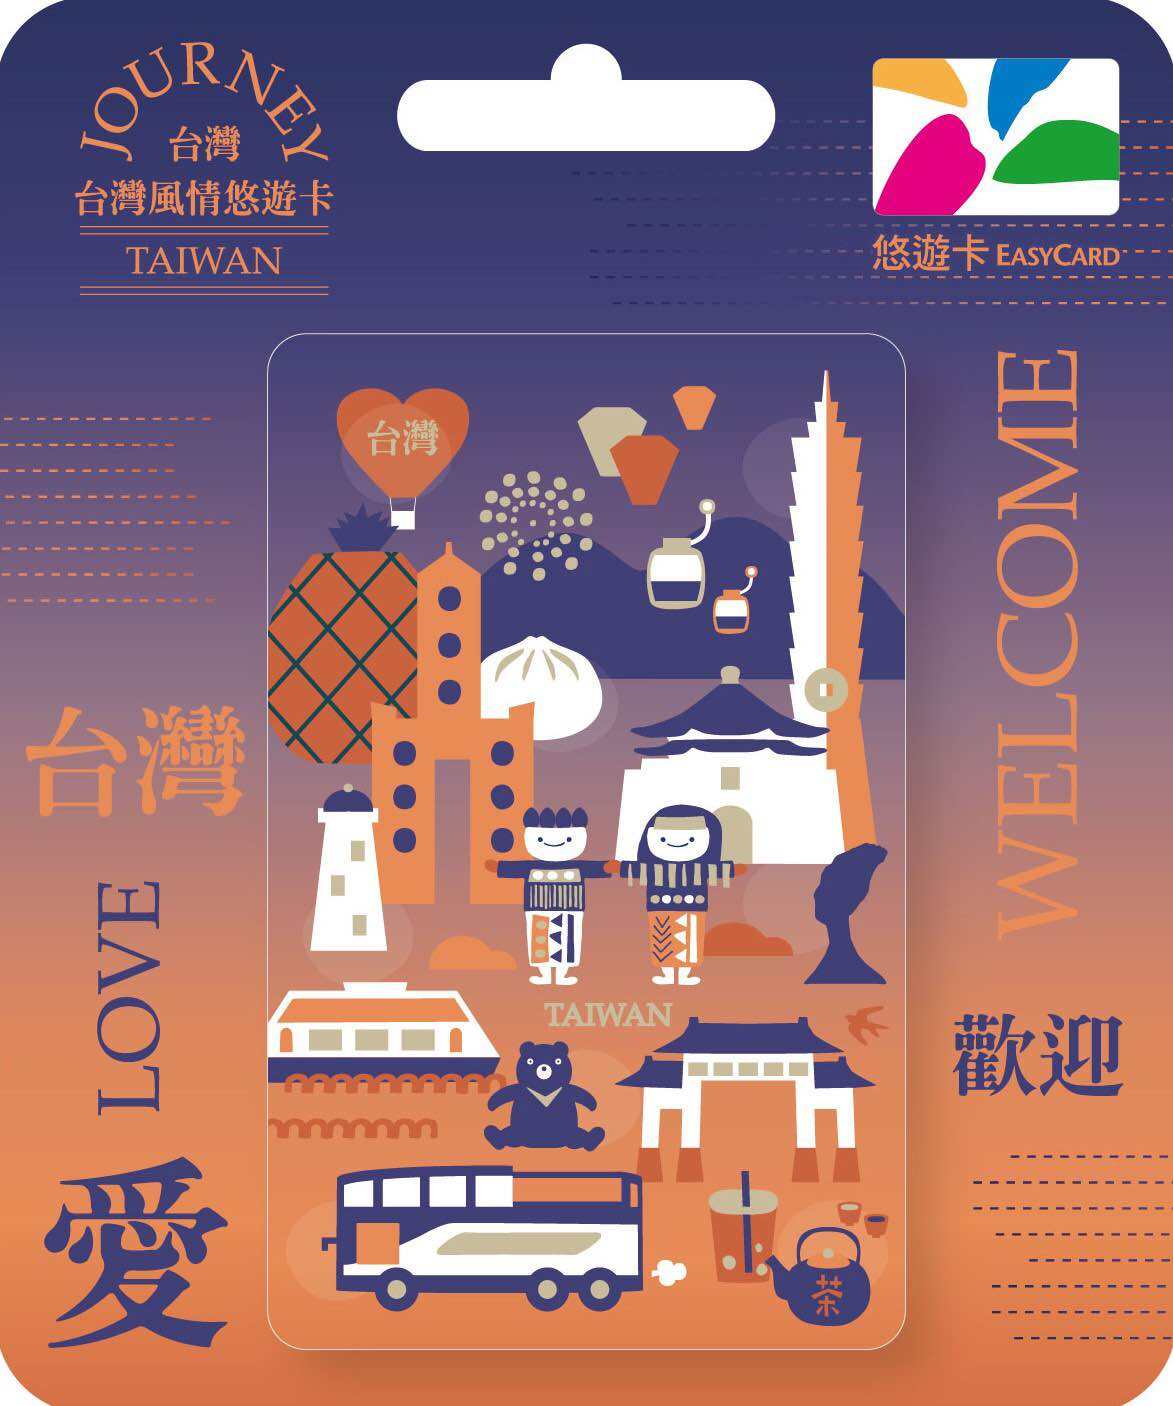 TAIWAN EASYCARD 台湾悠游卡“无限期使用”空卡自行充值台湾7-11 充值即 